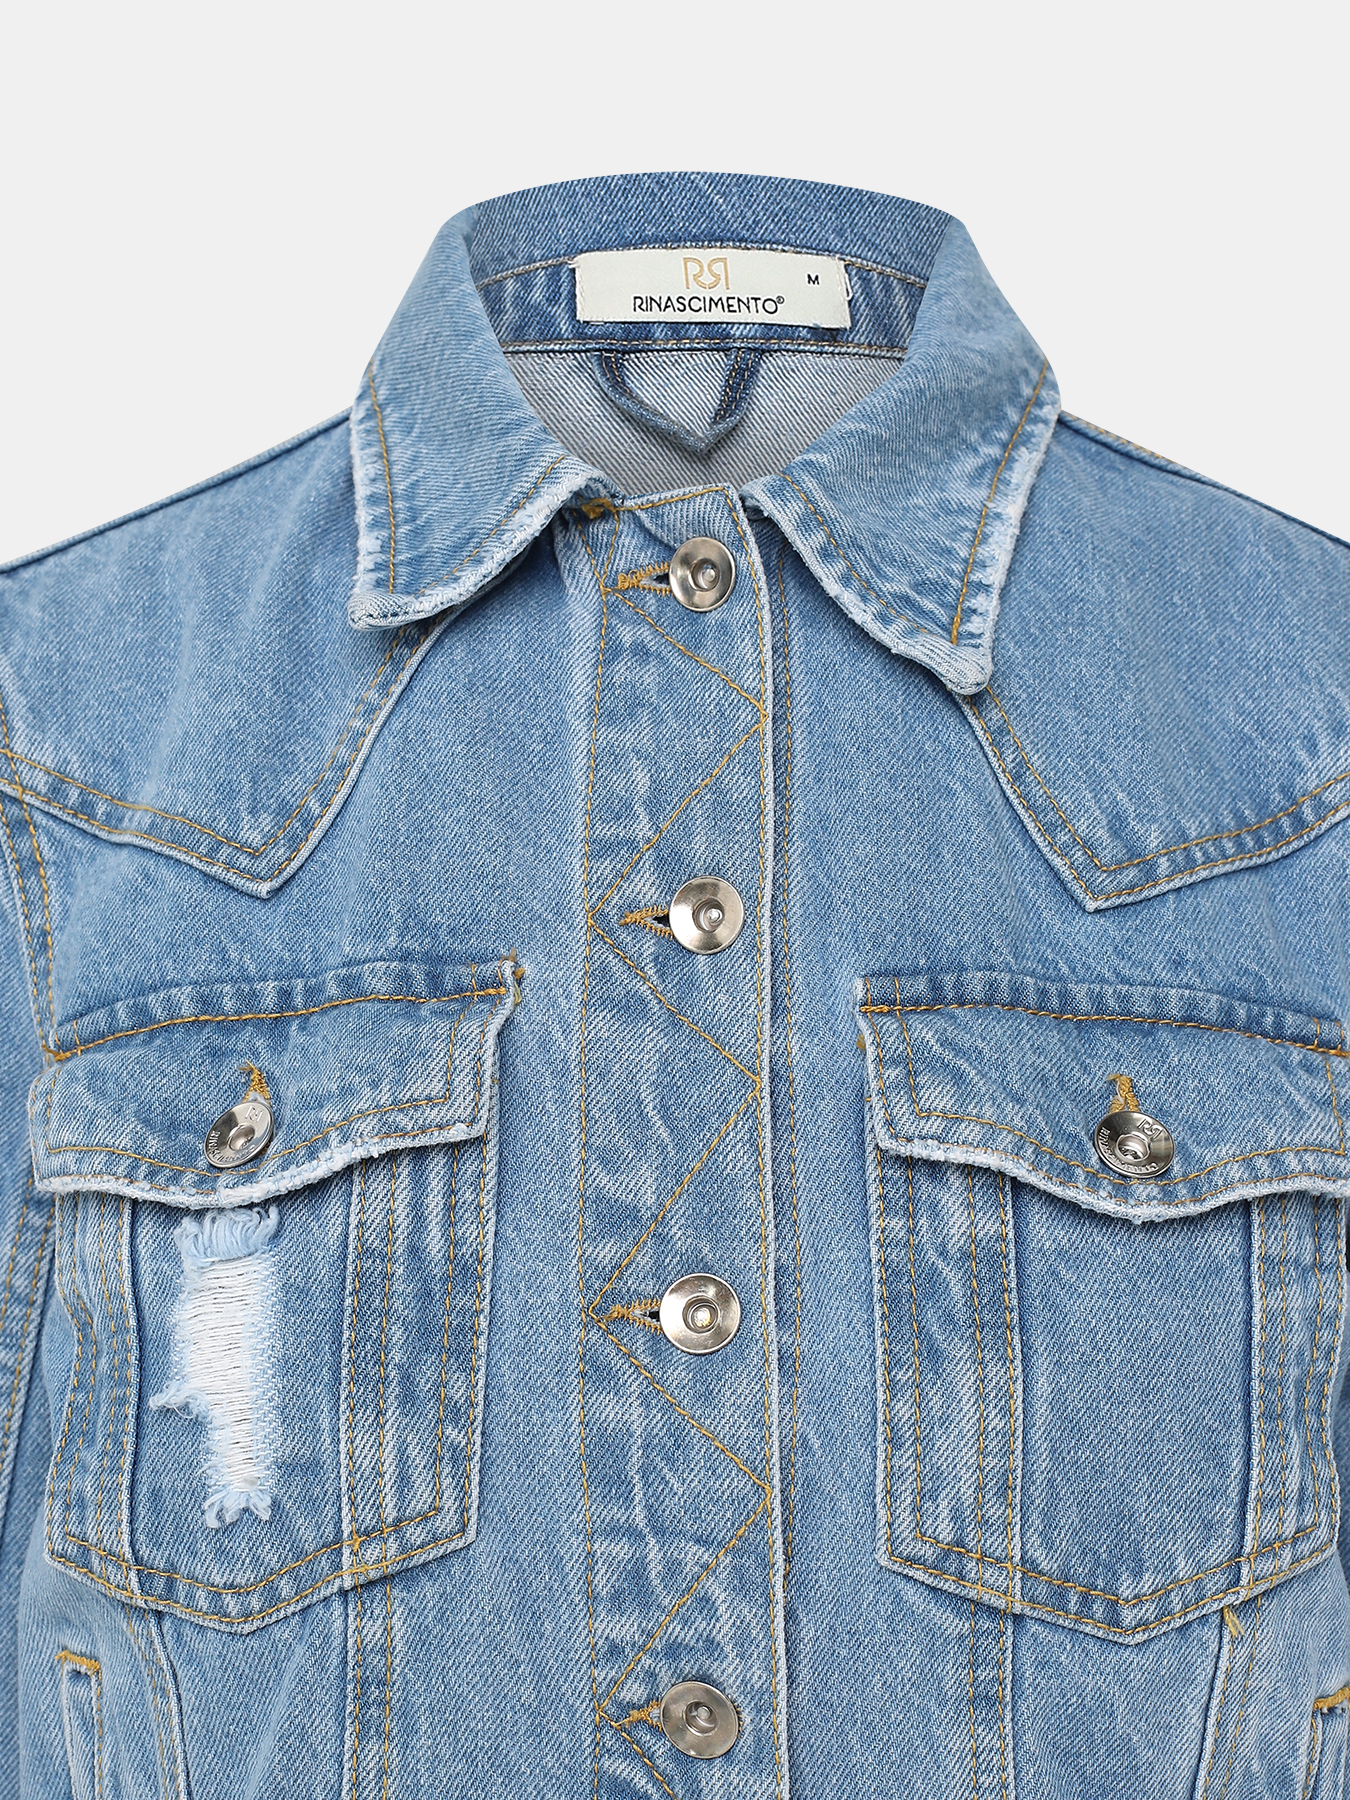 Джинсовая куртка Rinascimento 385572-041, цвет синий, размер 40-42 - фото 3